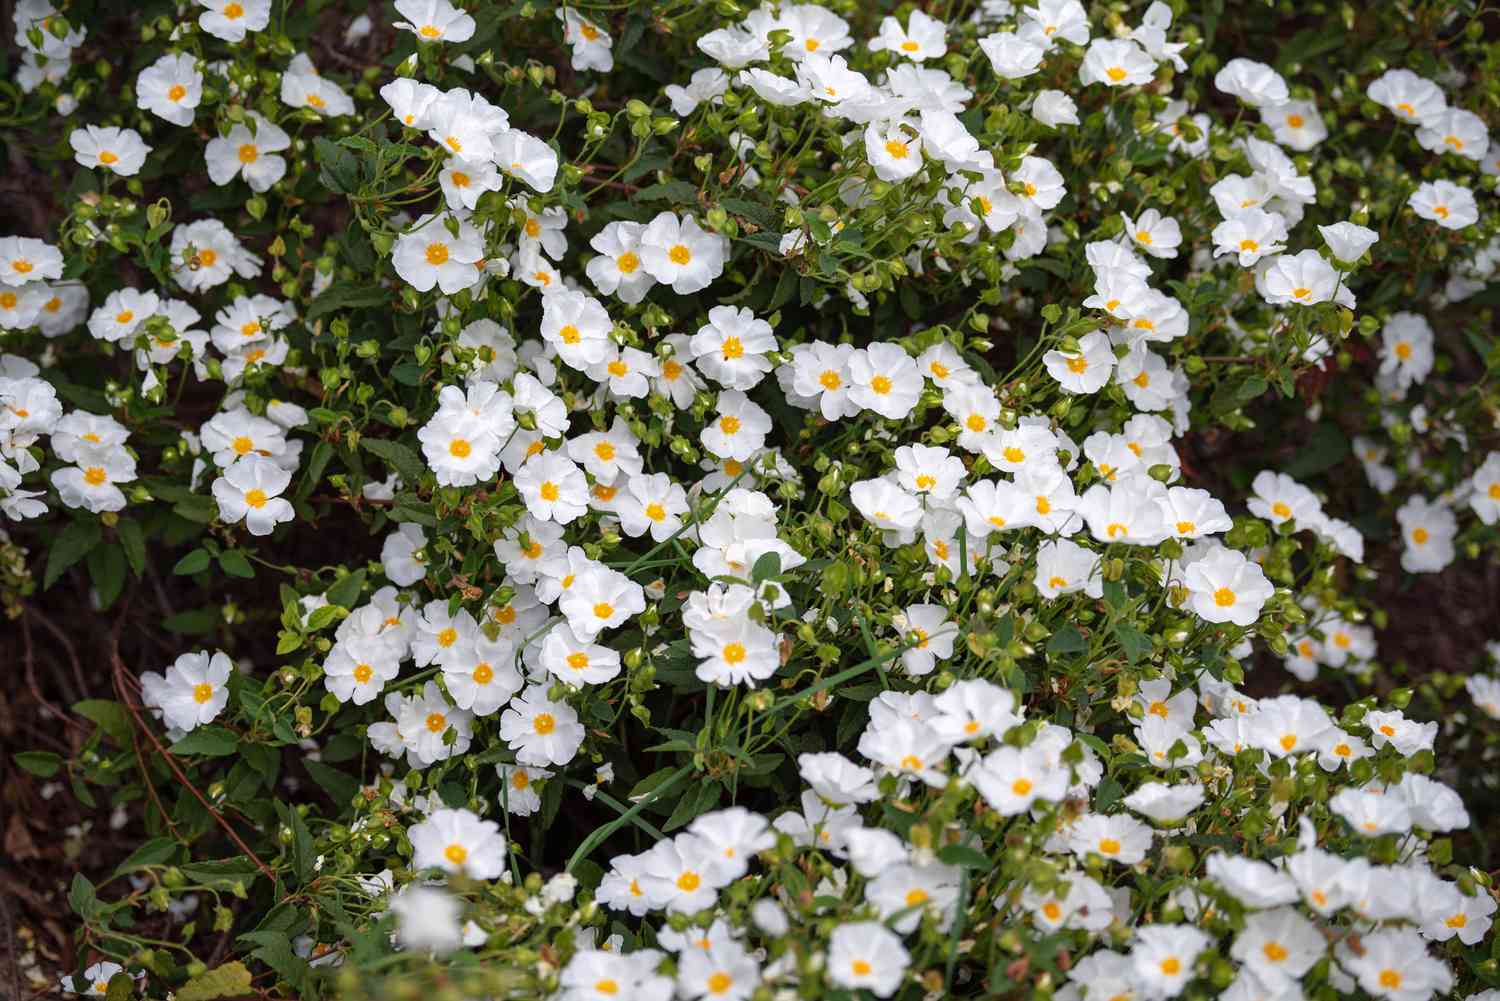 Arbusto de esteva coberto de pequenas flores brancas com centros amarelos